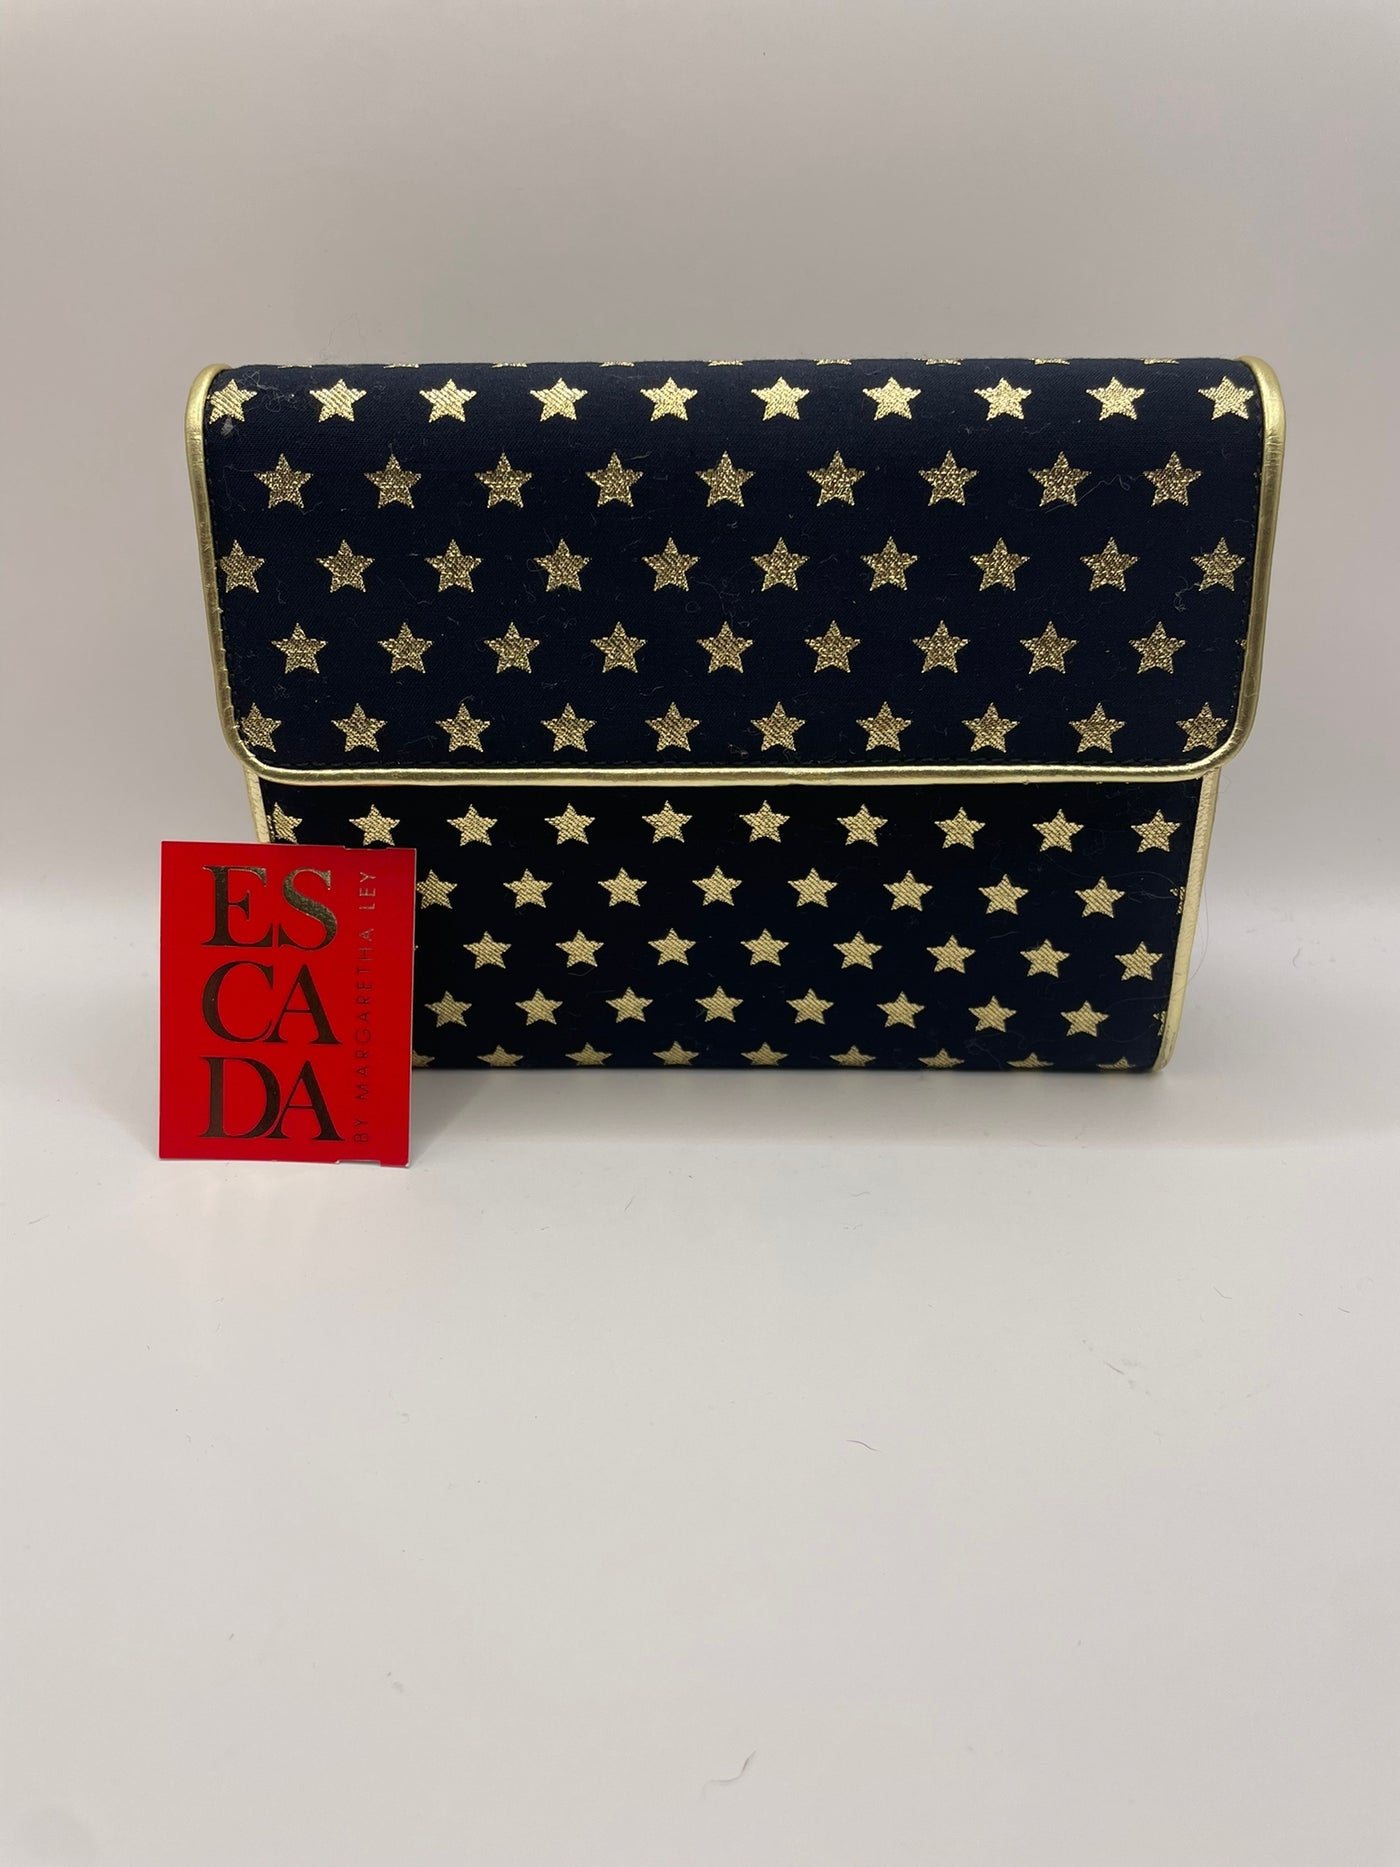 Escada brand new handbag